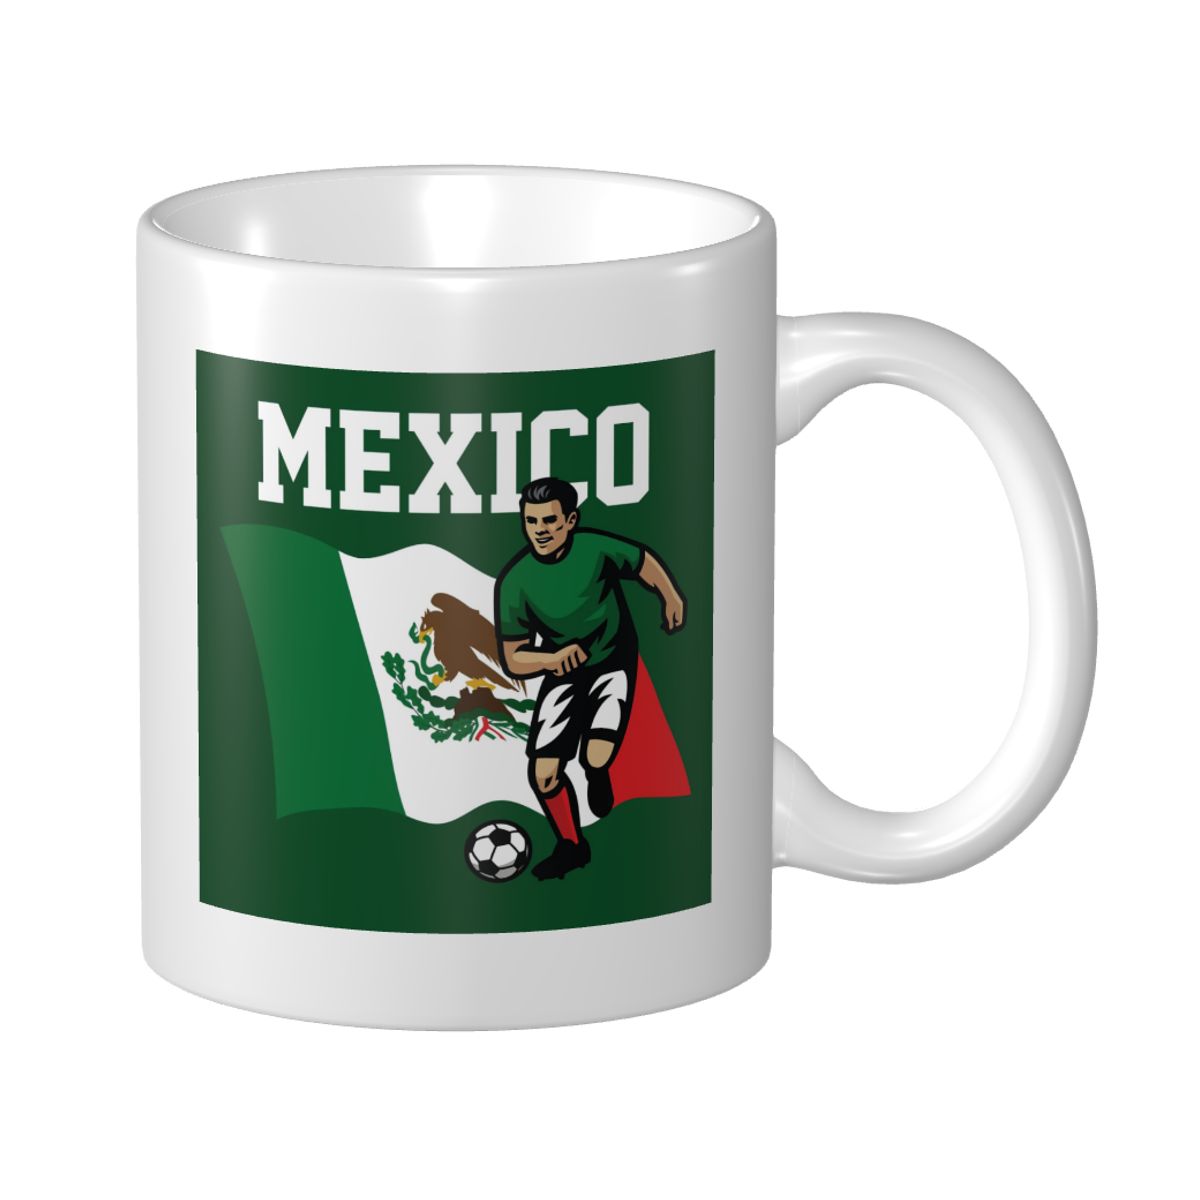 Mexico Soccer Player Mug